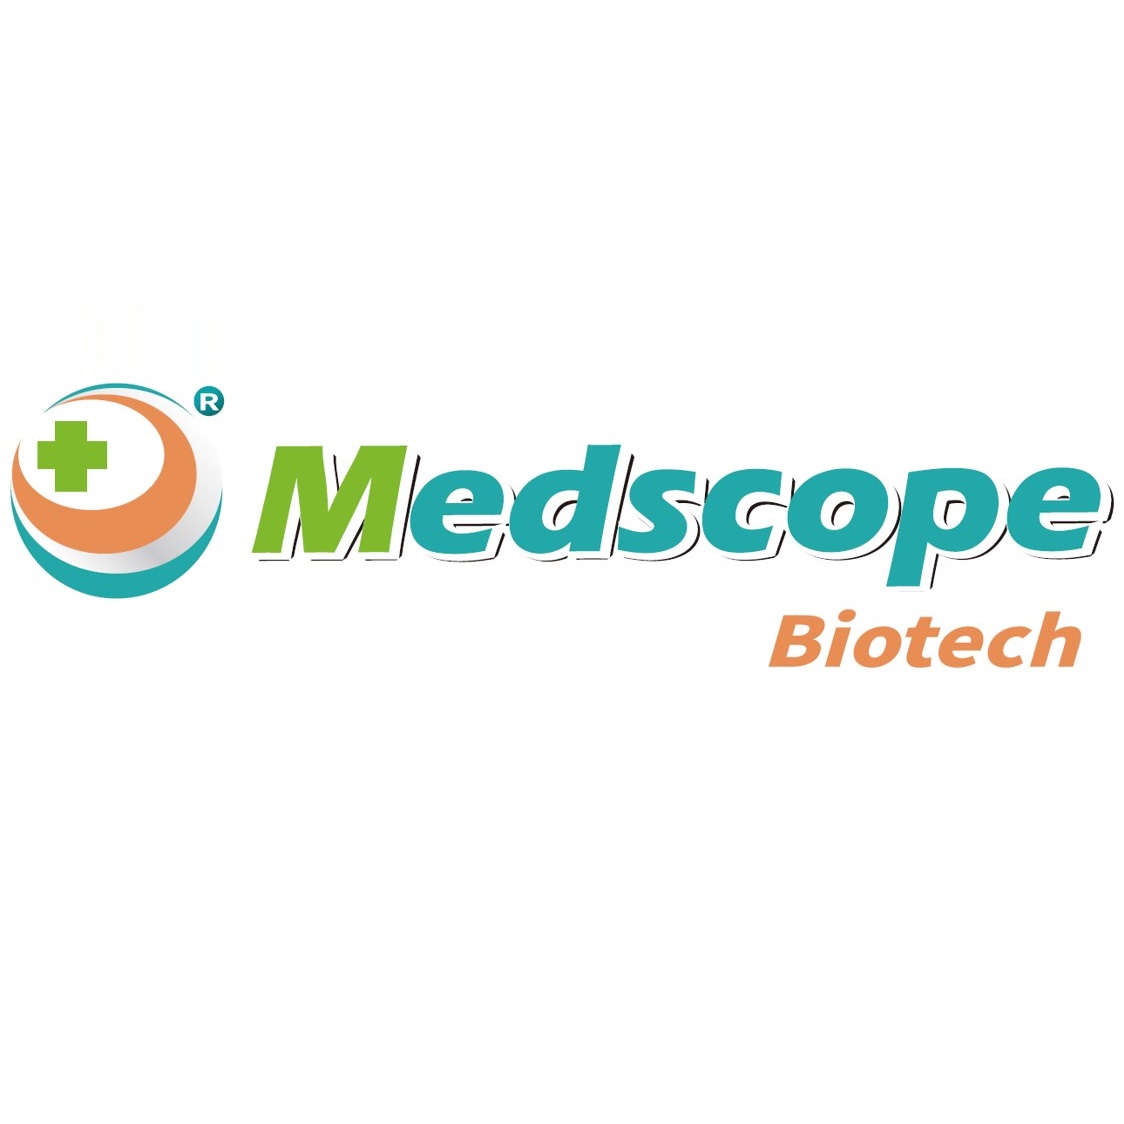 MEDSCOPE BIOTECH CO., LTD.